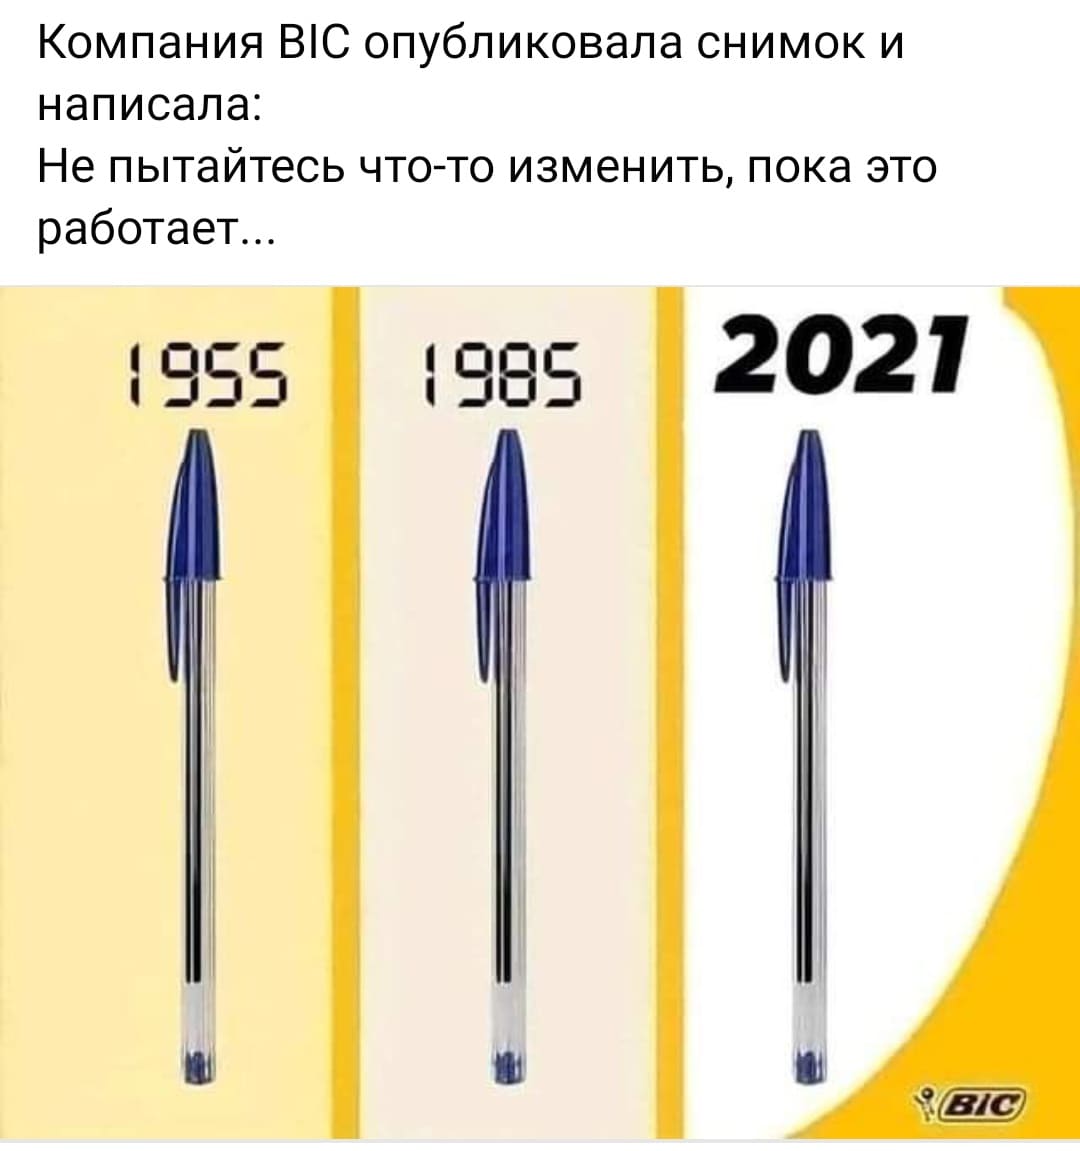 Компания BIC опубликовала снимок и написала: Не пытайтесь что-то изменить, пока это работает... 1955, 1985, 2021.